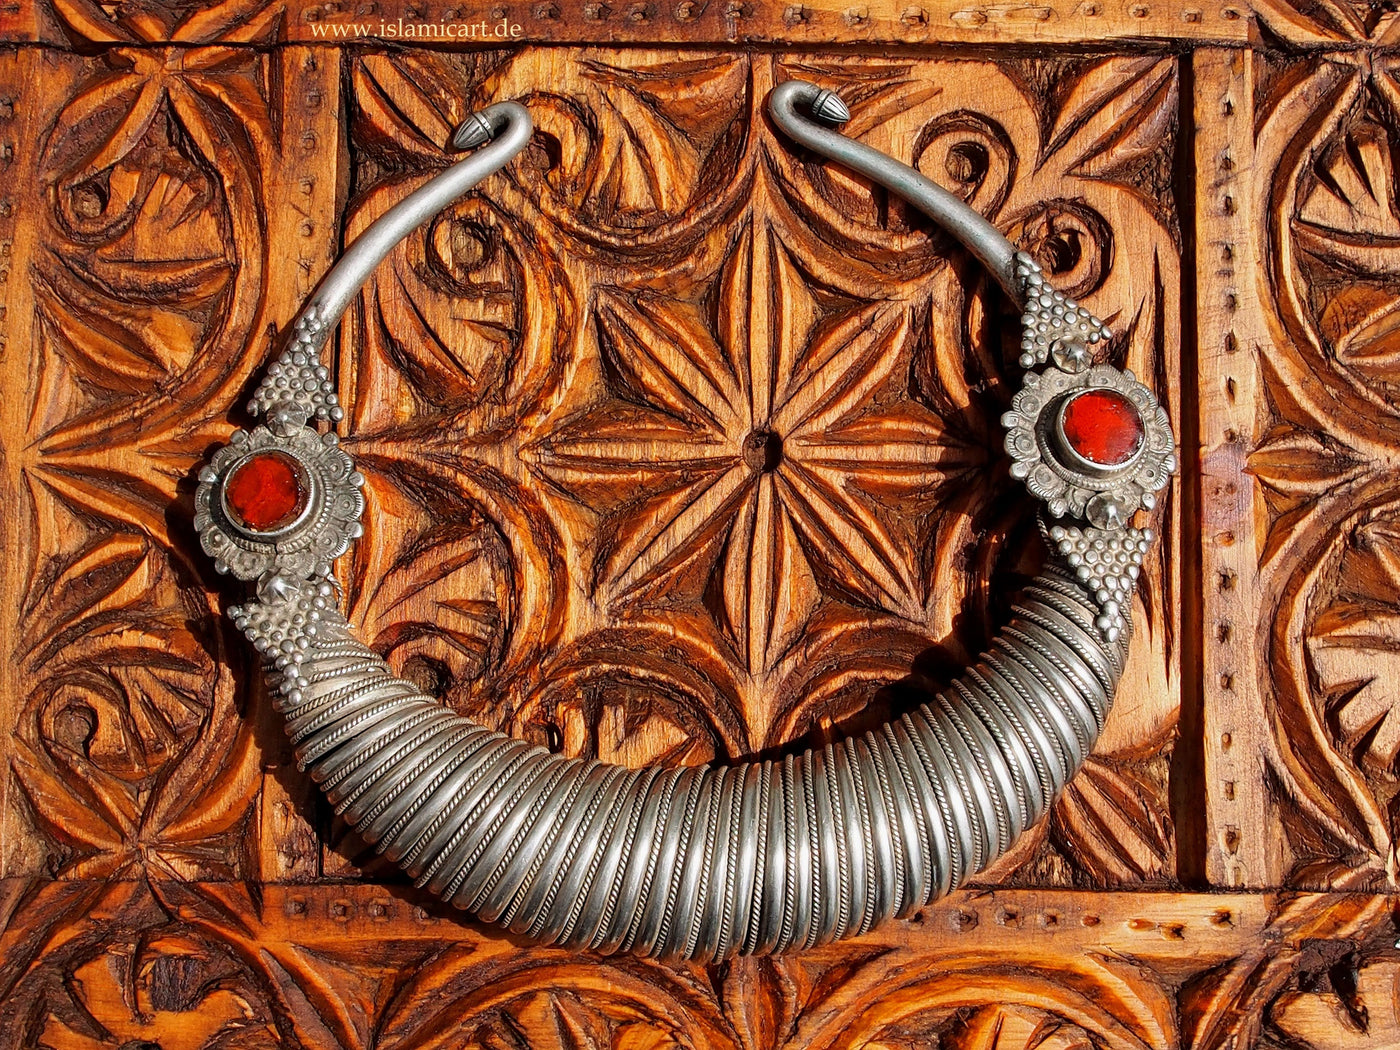 antik nomaden Afghan Silber necklace Spiral-Halsreifen Kette swat kalash Nuristan Afghanistan  Nr-17/11  Orientsbazar   